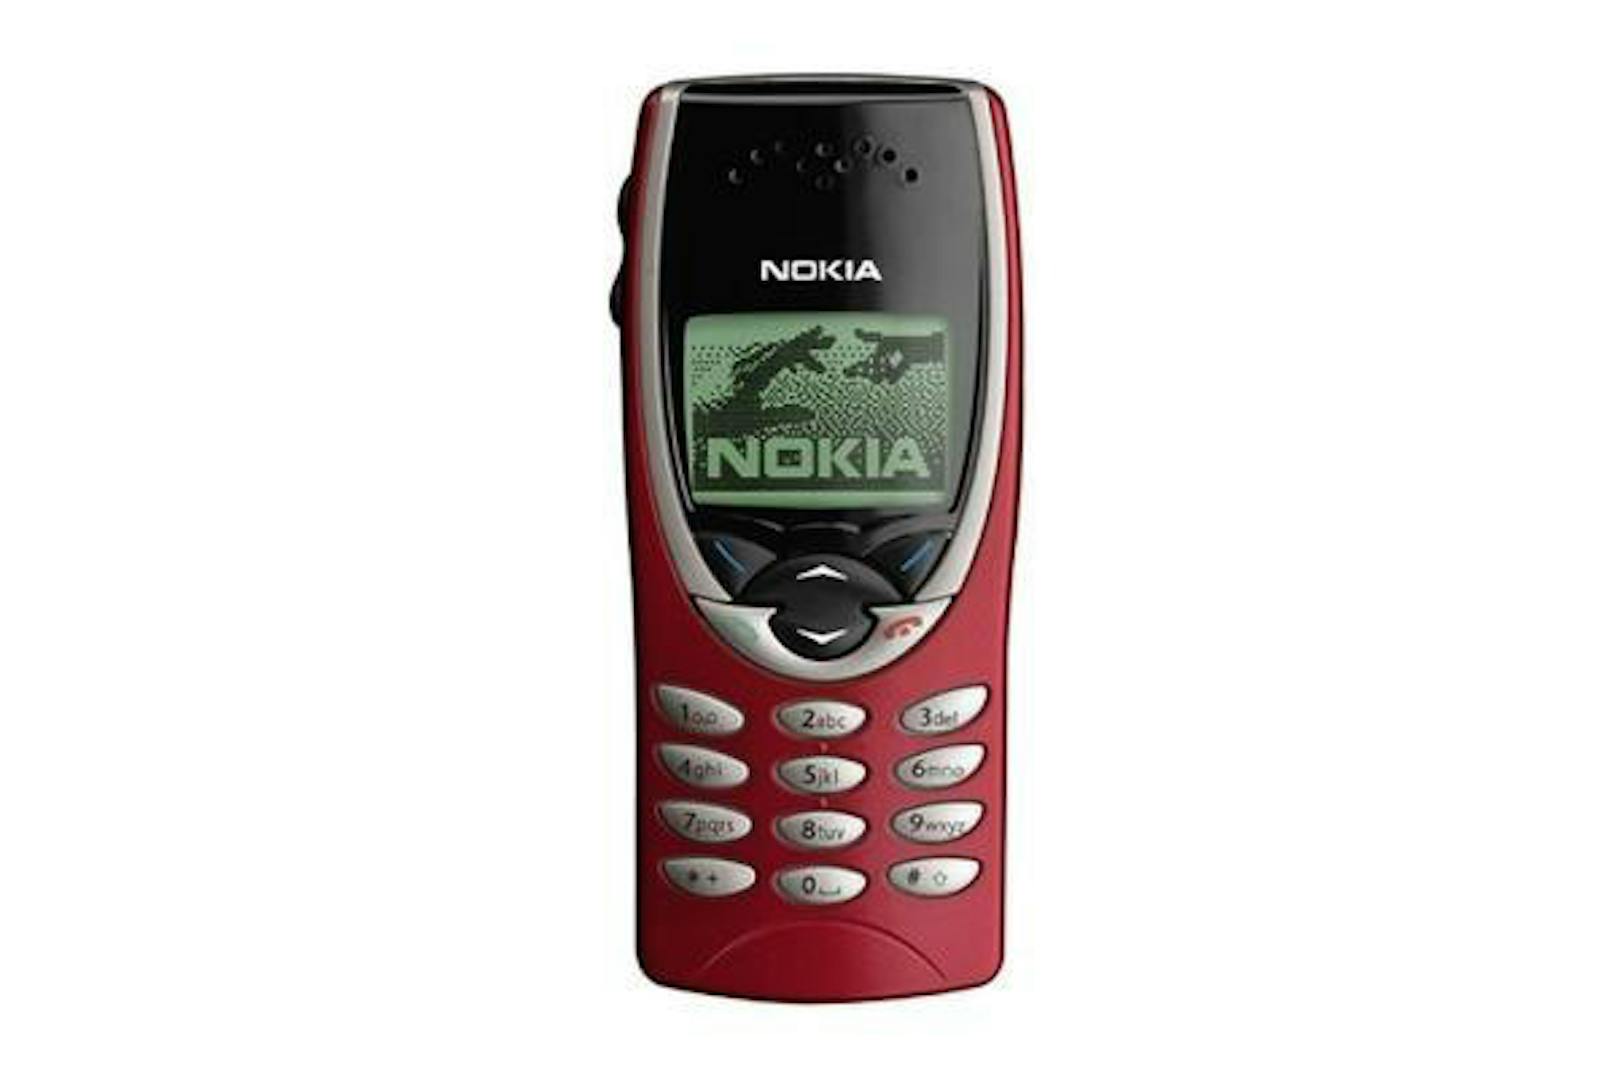 Nokia 8210: Es war eines der kleinsten und leichtesten Handys seiner Zeit. Das Modell 8210 war nur einer der Kassenschlager der Finnen. Erstmals vorgestellt wurde es 1999.